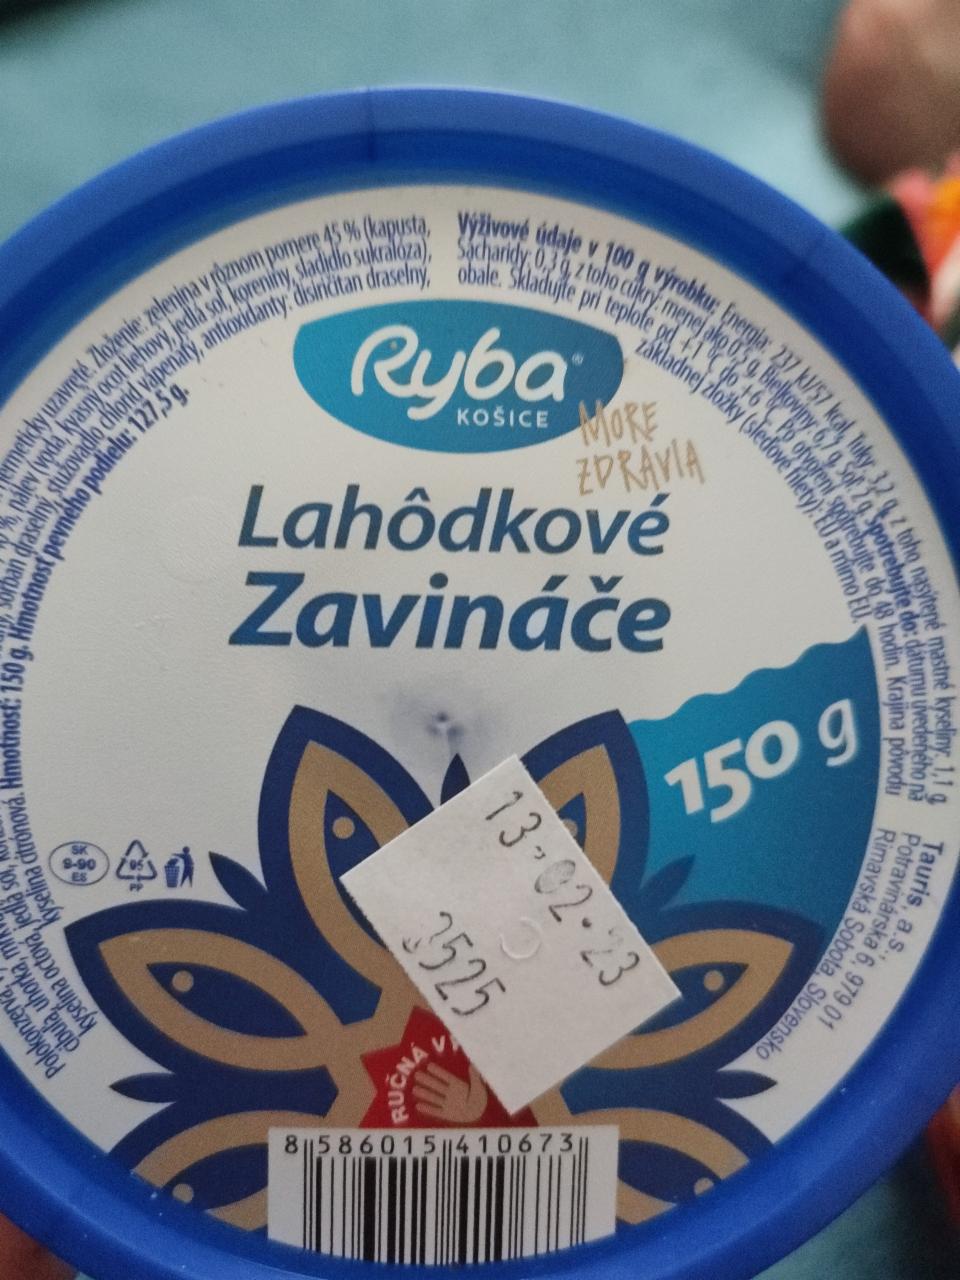 Fotografie - Lahôdkové zavináče Ryba Košice